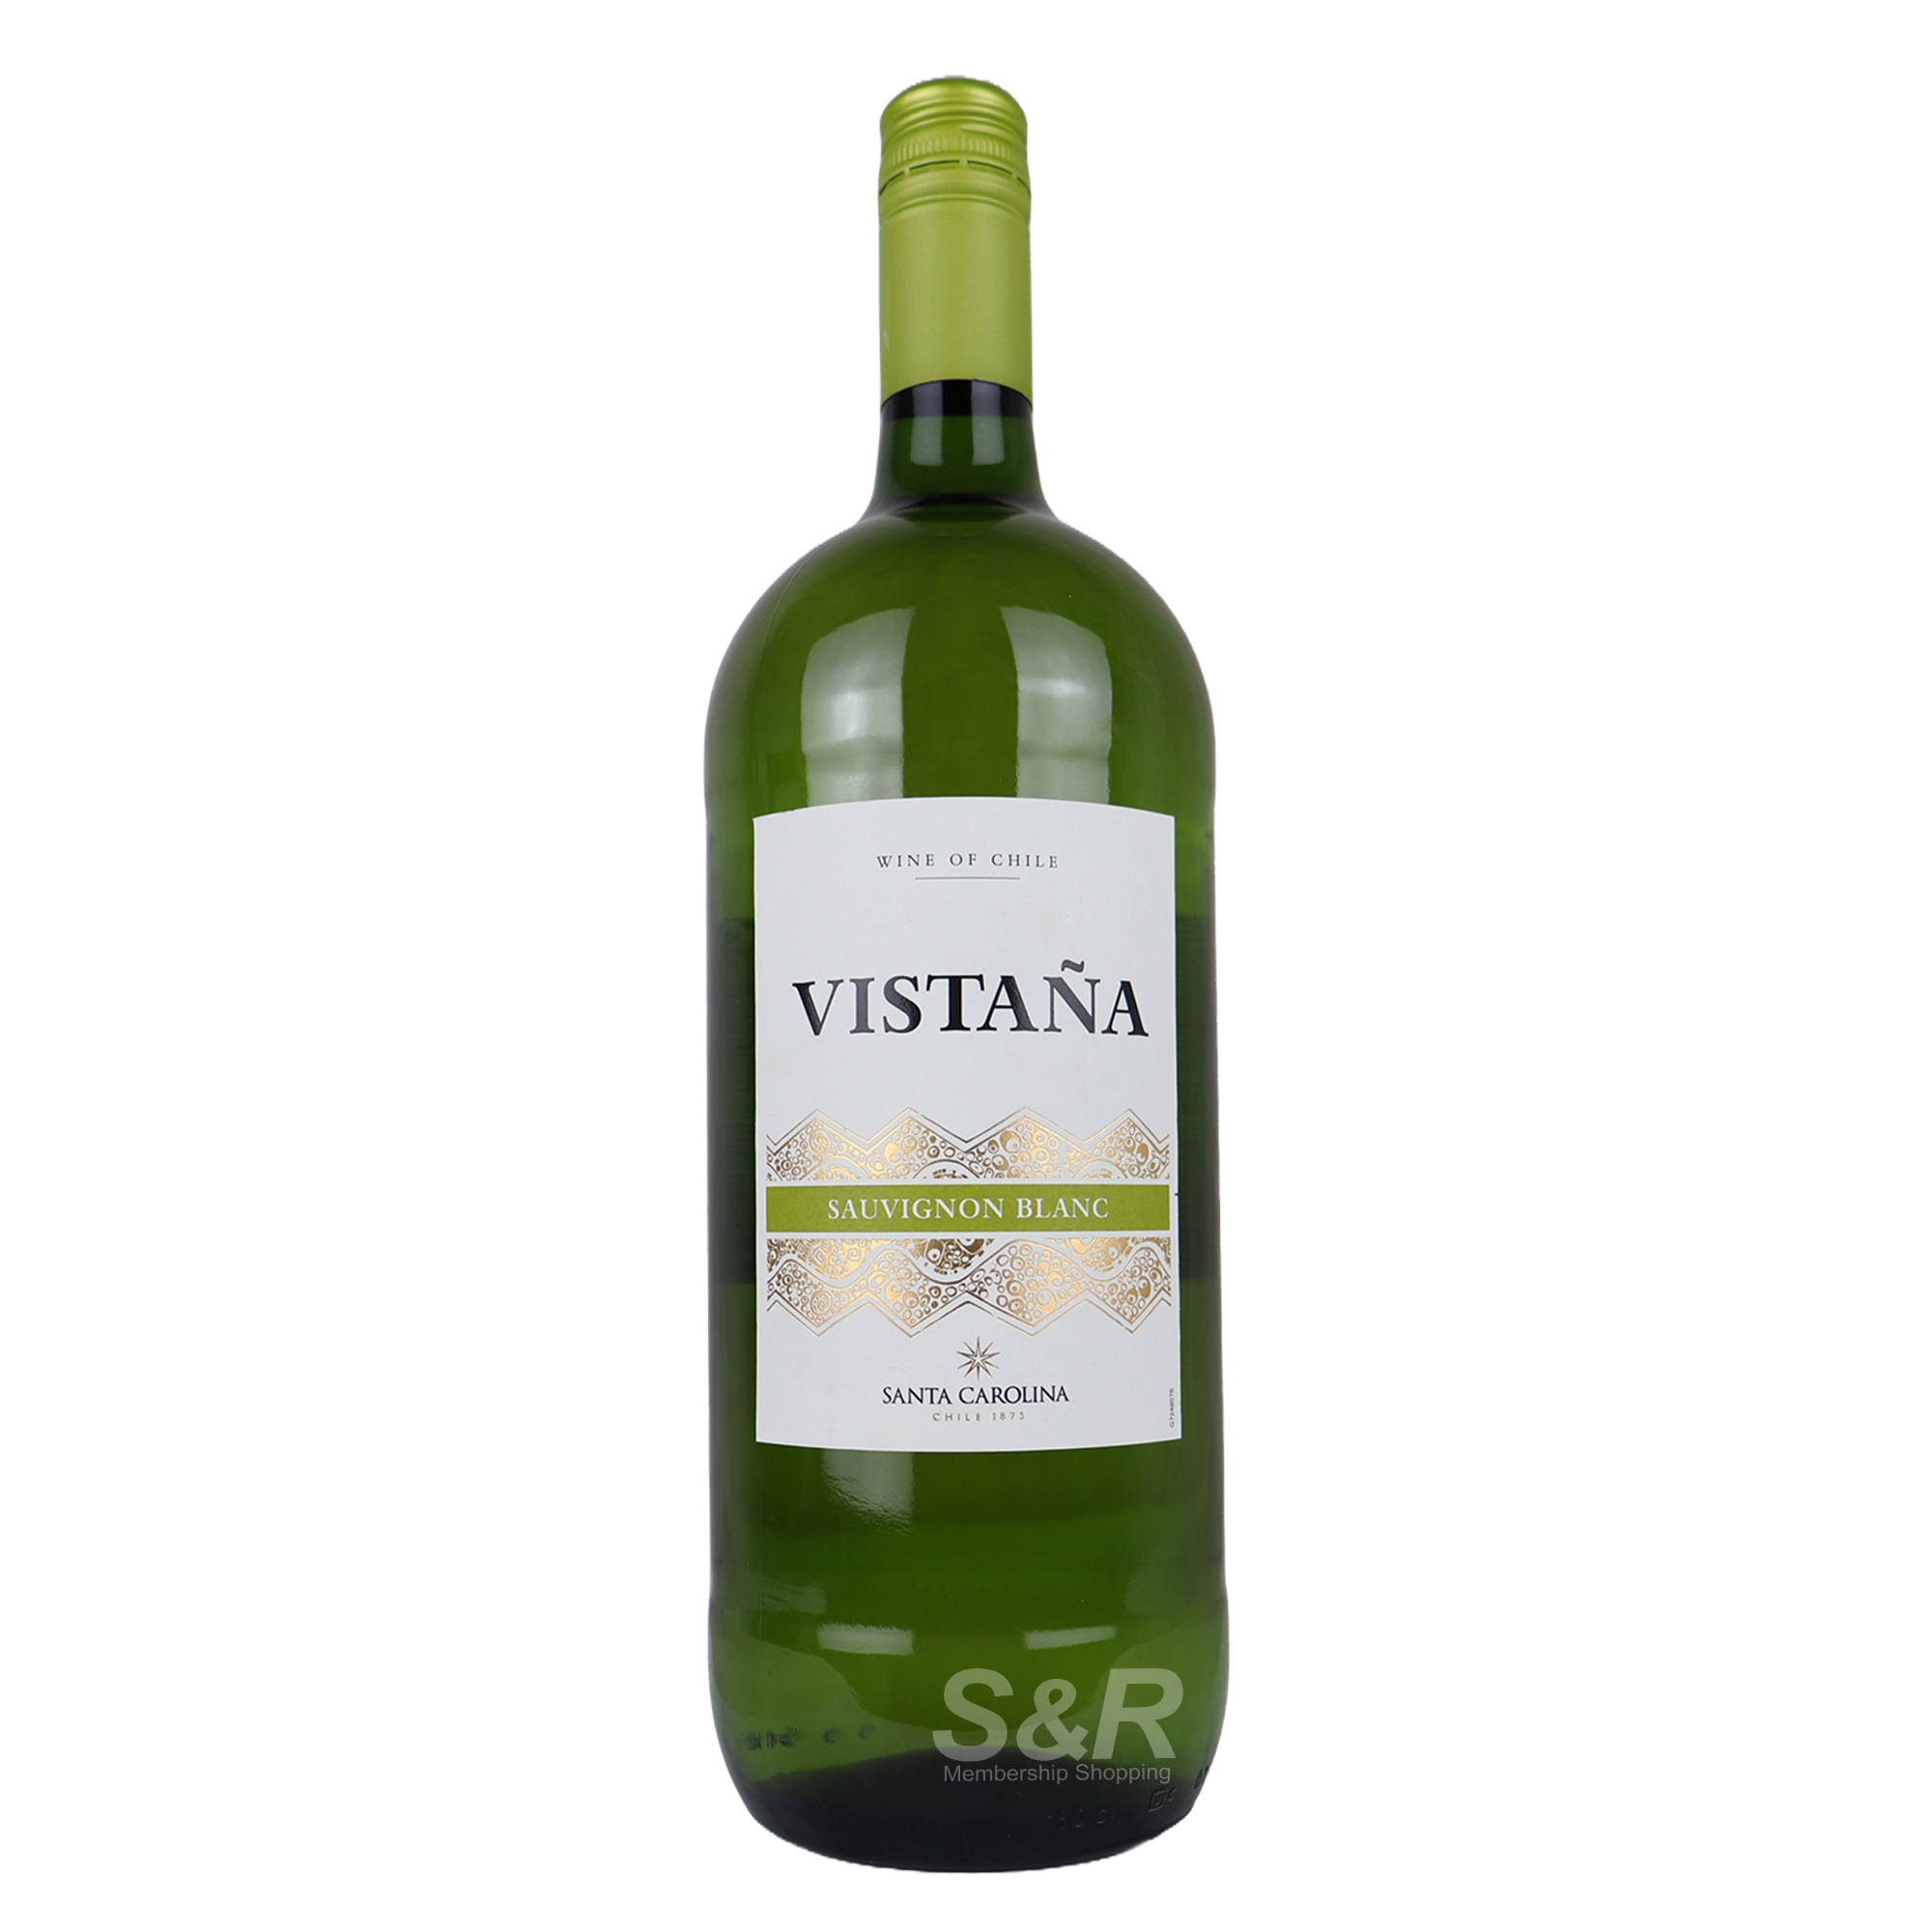 Santa Carolina Vistaña Sauvignon Blanc 1.5L